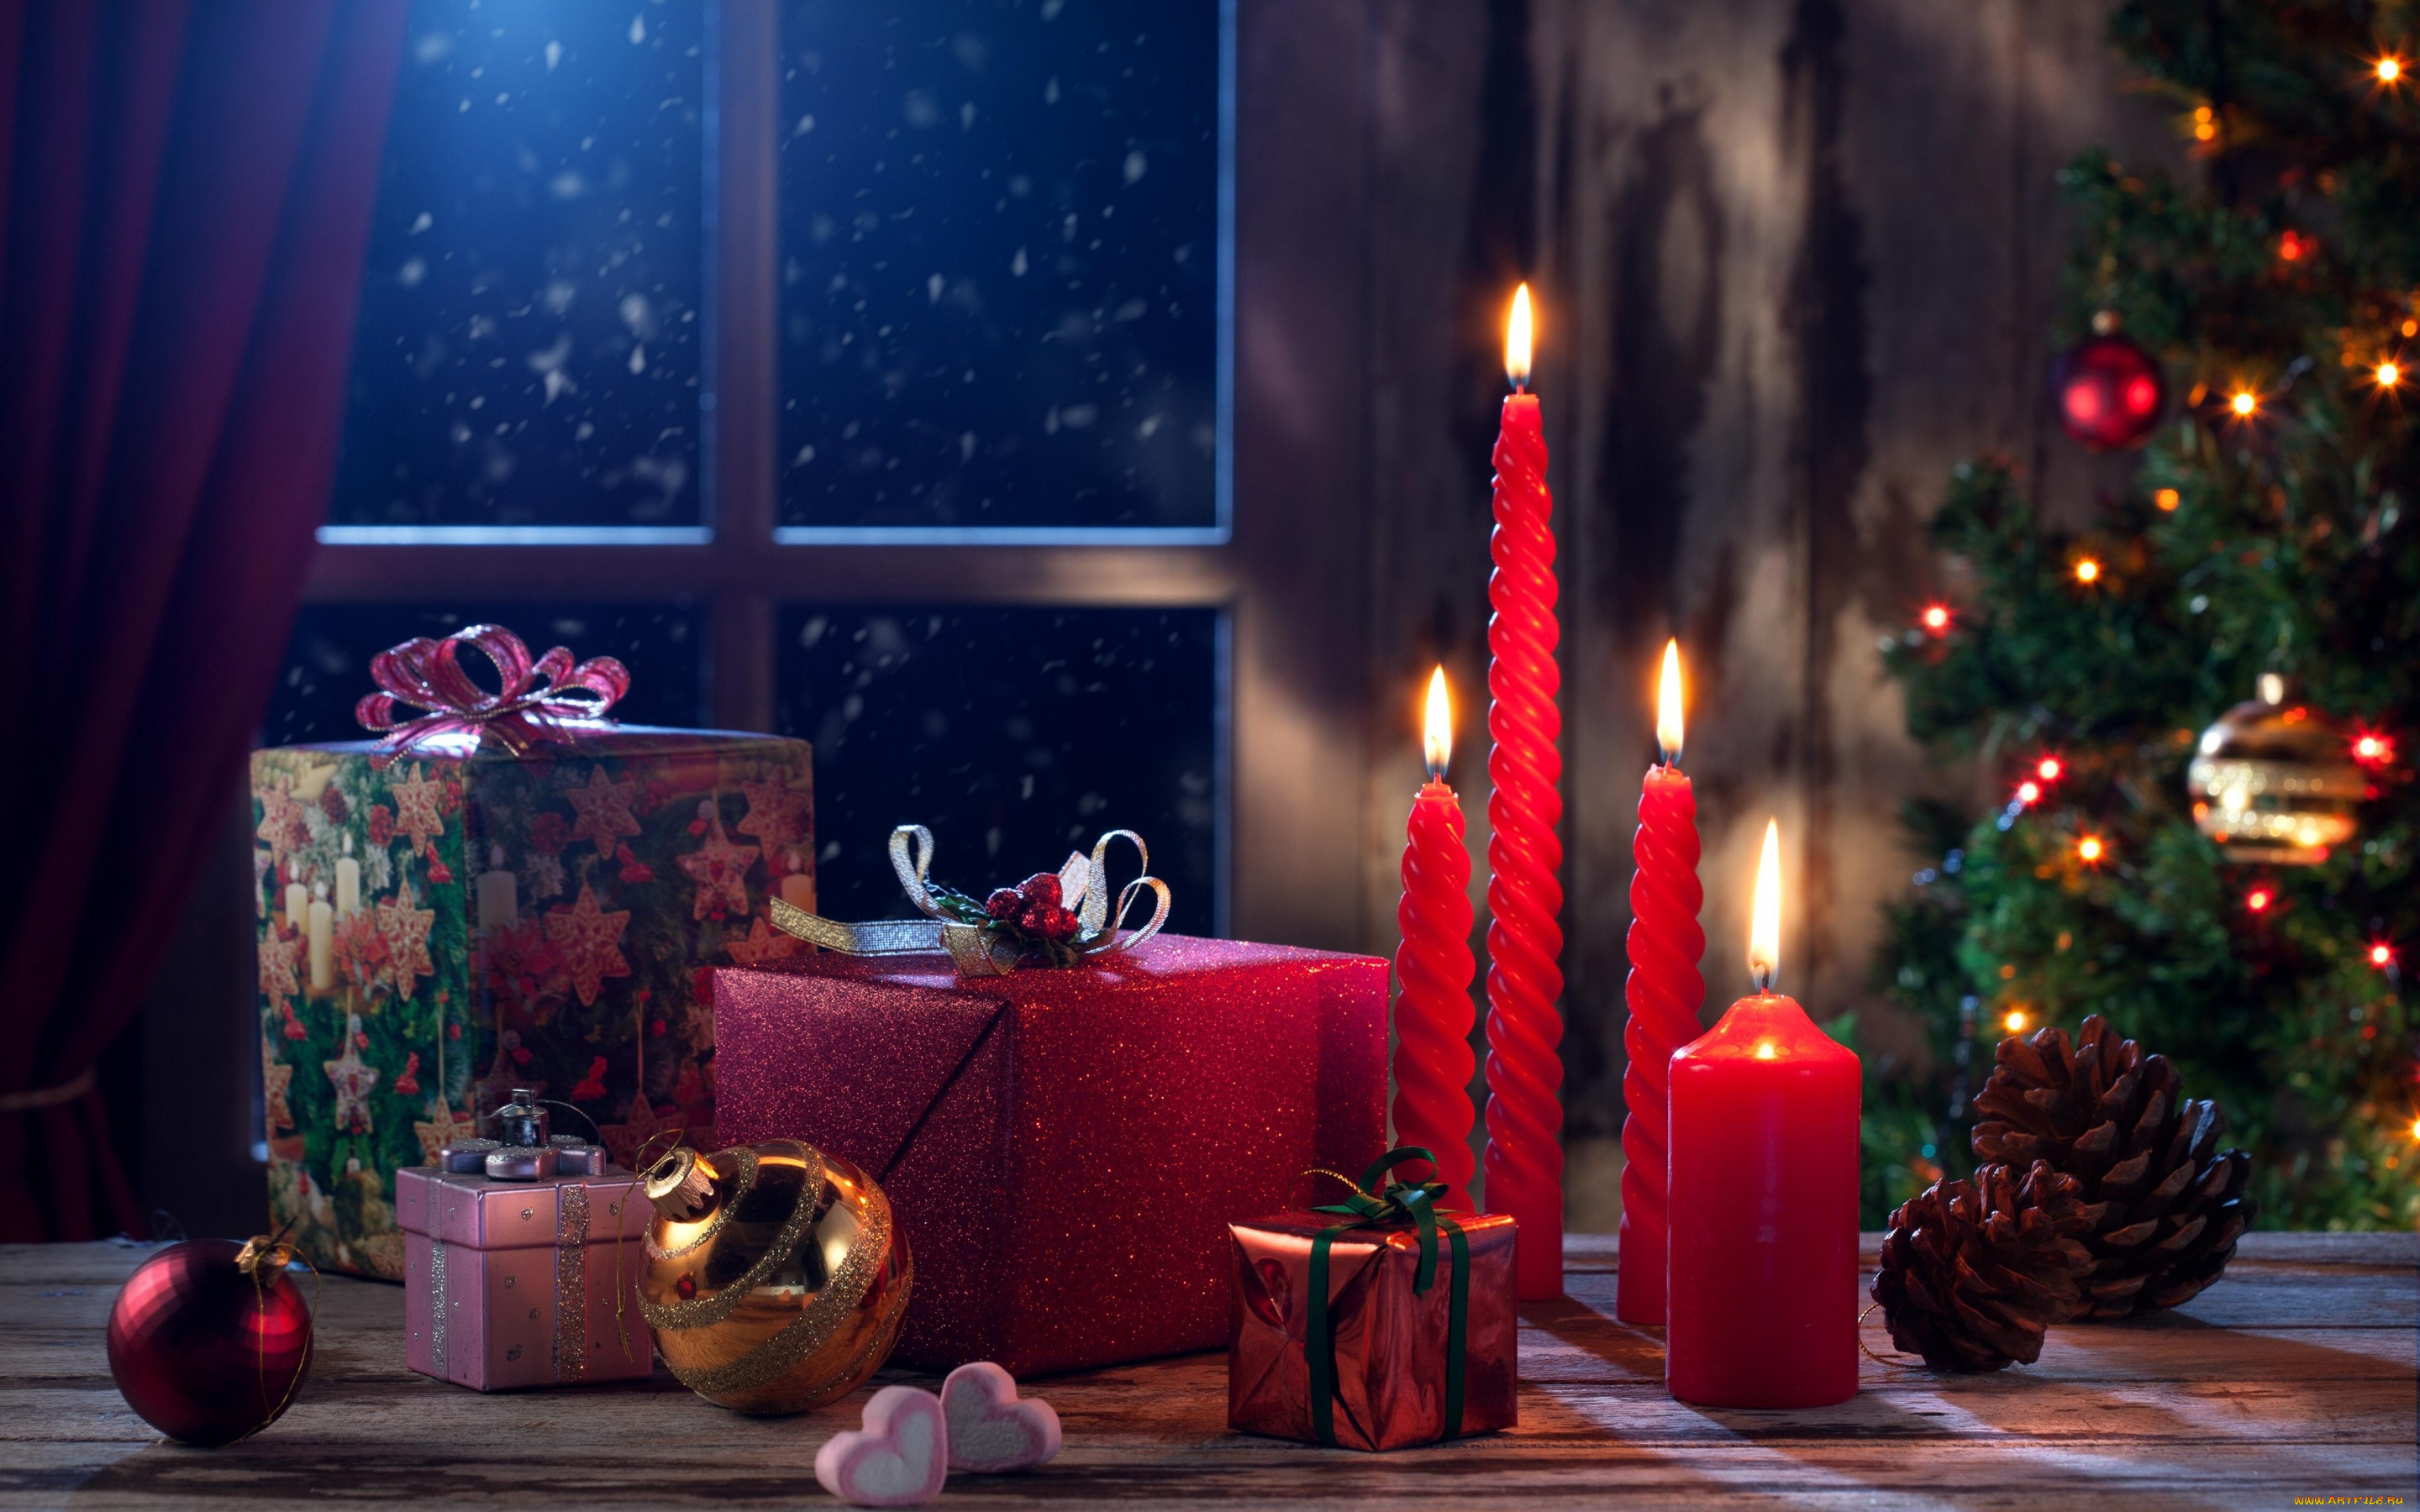 праздничные, новогодние, свечи, шарики, свечи, подарки, окно, ёлка, украшения, игрушки, шишки, елка